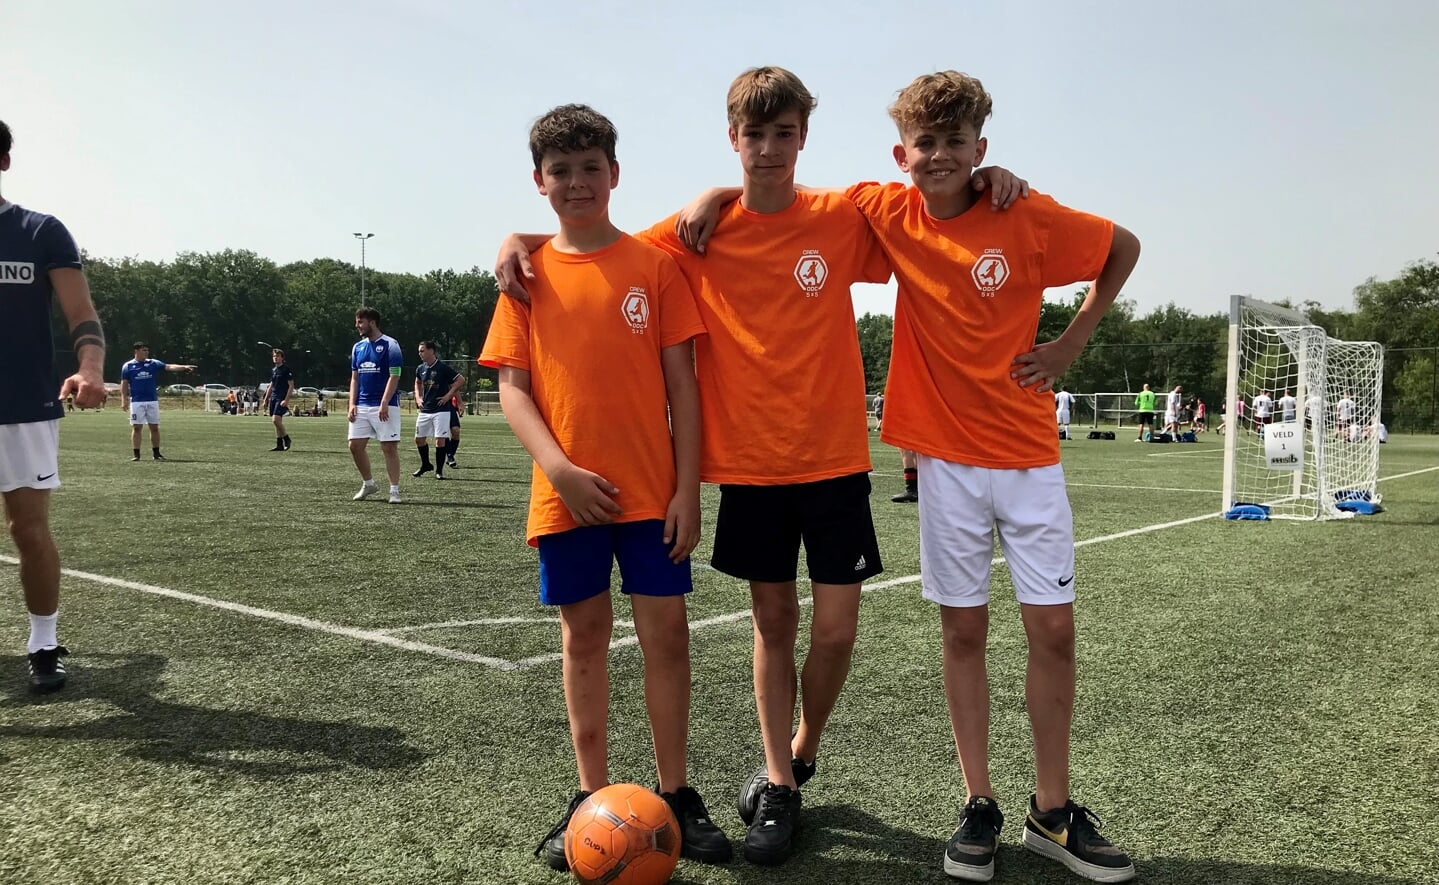 Voetballers Thijs Dankers (14), Caelen Parry (13) en Jens van Pinxteren (14) waren, samen met een aantal andere meiden en jongens, actief als ballenjongens tijdens het jaarlijkse vijf-tegen-vijf-toernooi van voetbalclub ODC in Boxtel afgelopen zaterdag.